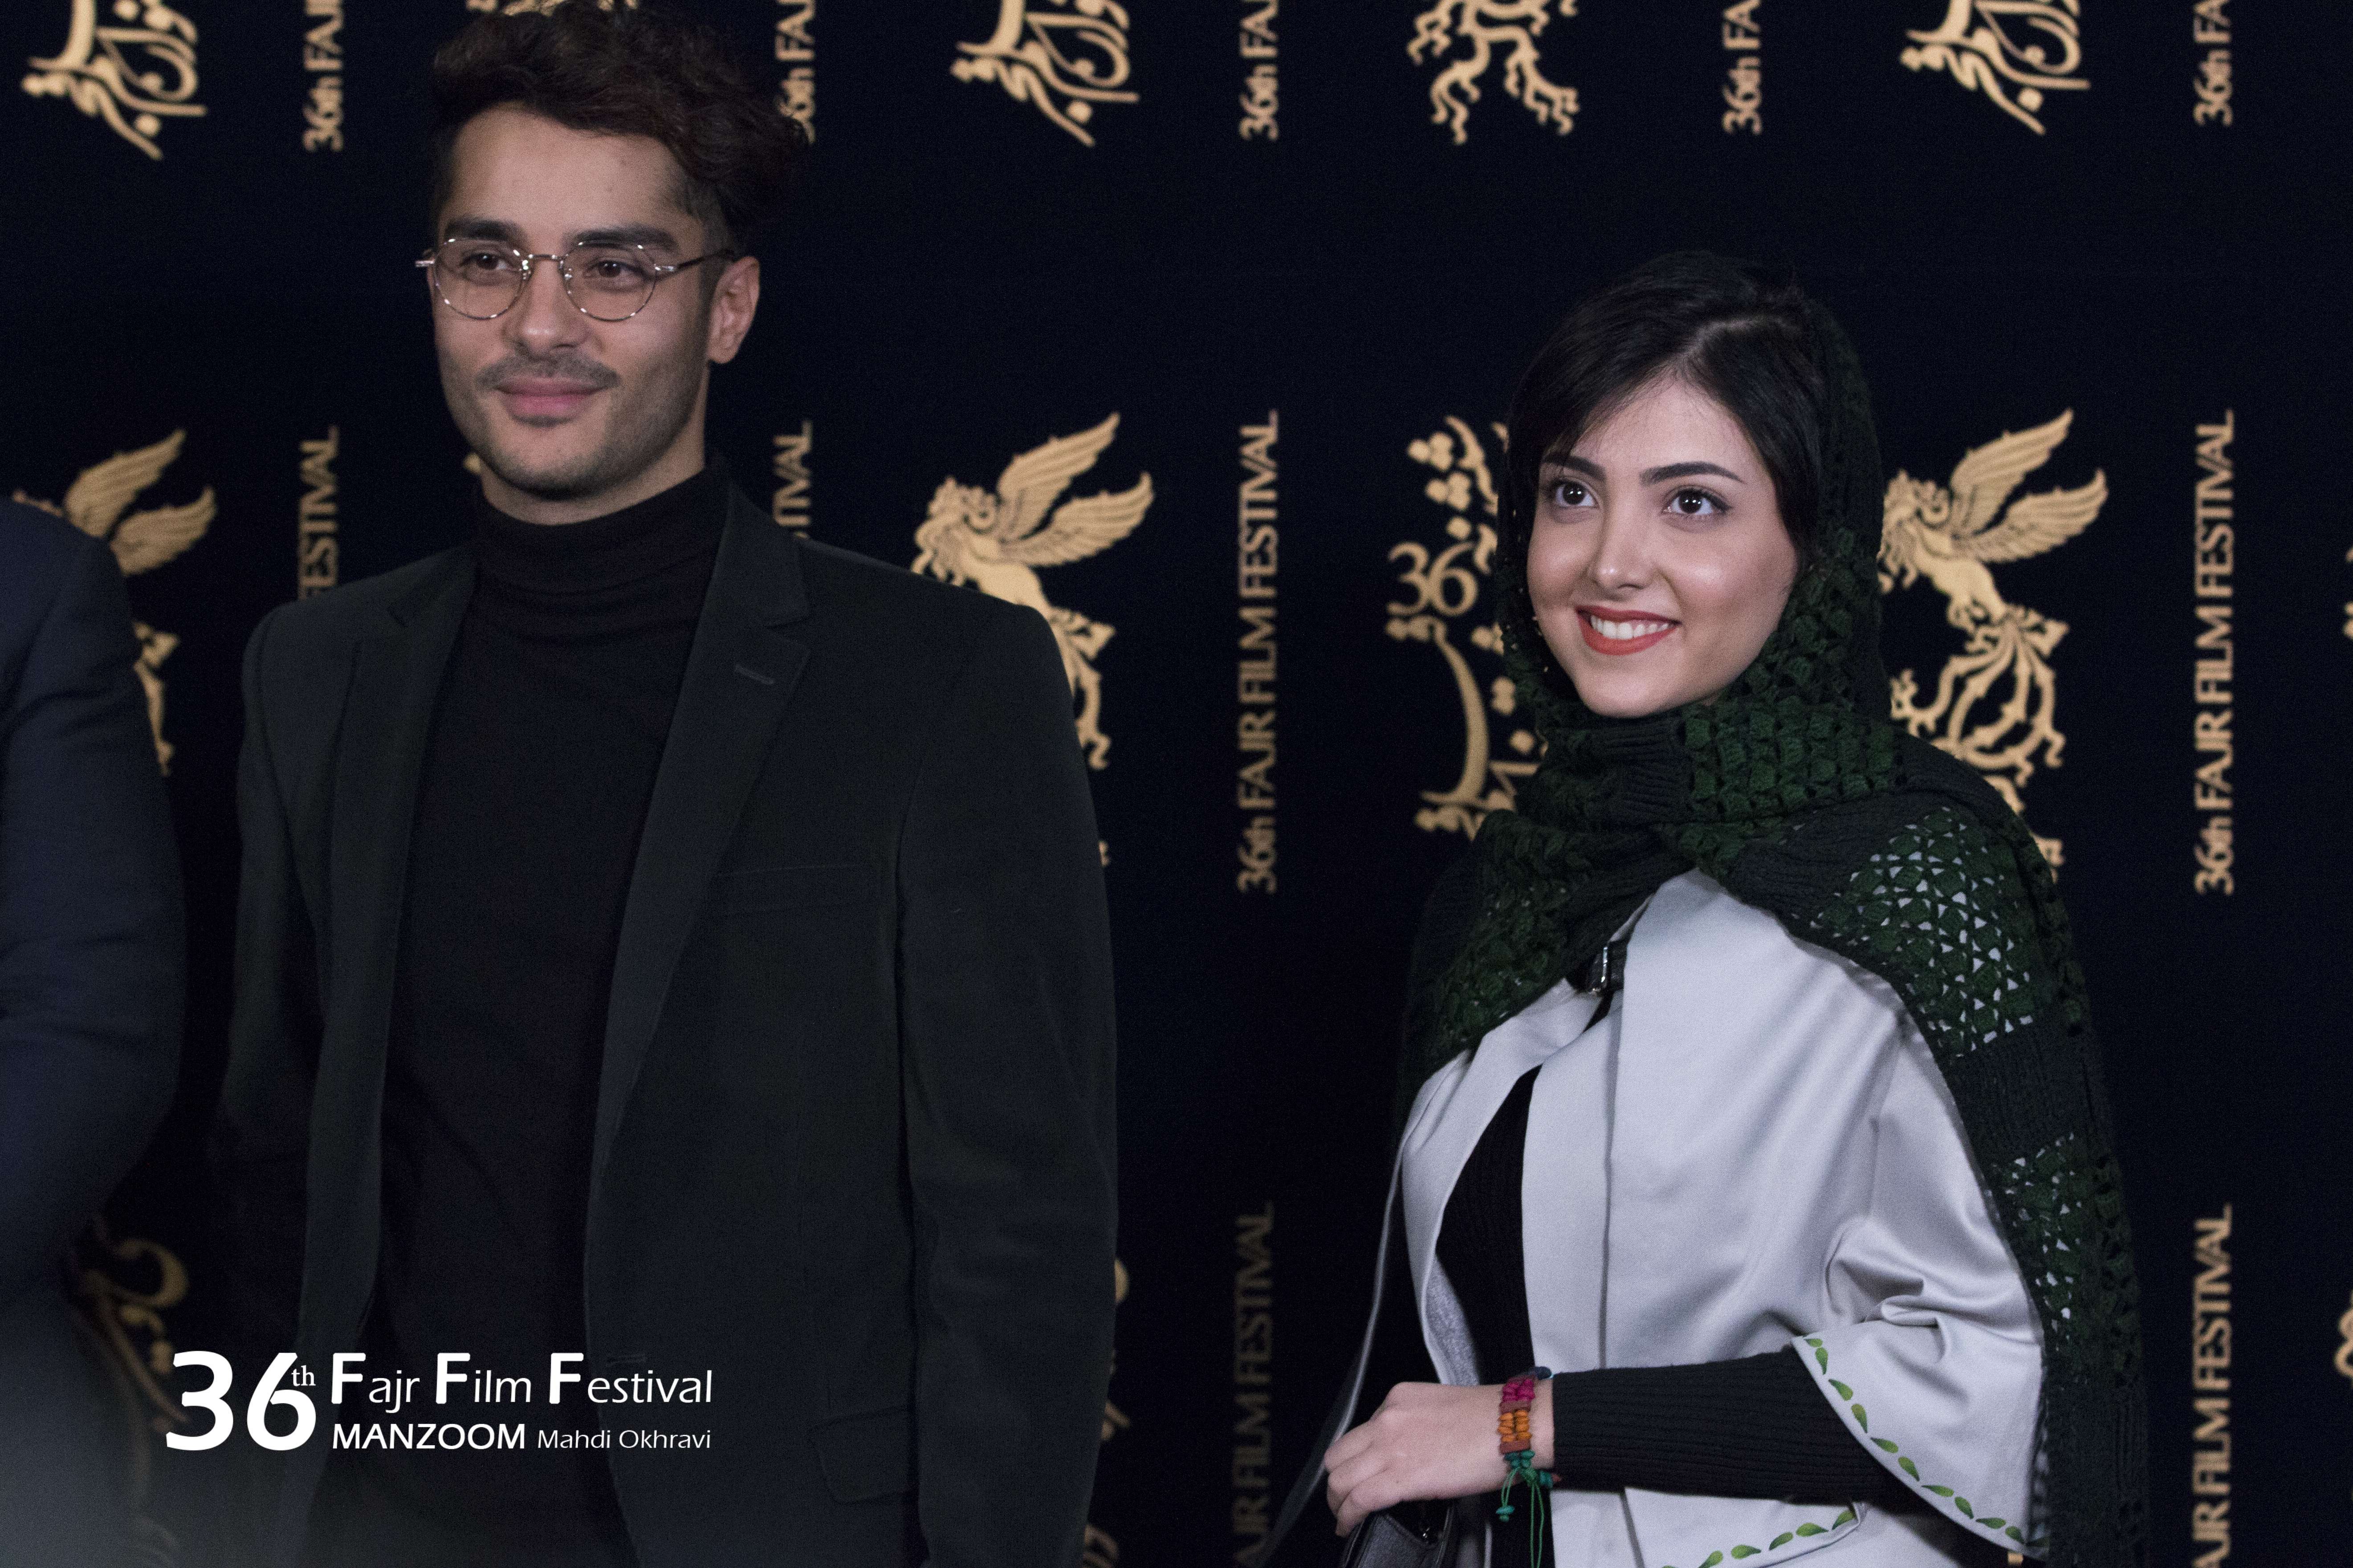 ساعد سهیلی در جشنواره فیلم سینمایی لاتاری به همراه زیبا کرمعلی